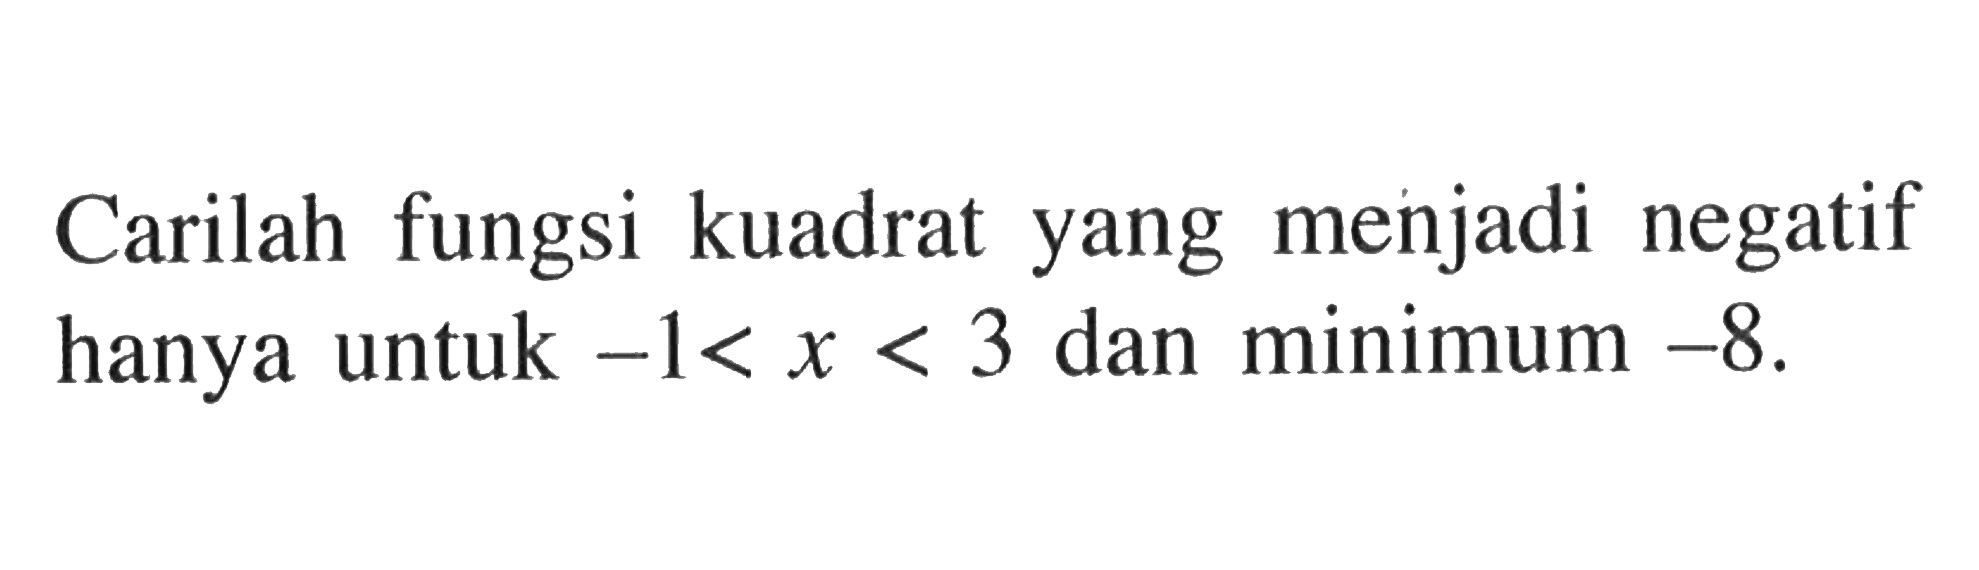 Carilah fungsi kuadrat yang menjadi negatif hanya untuk -1<x<3 dan minimum -8.